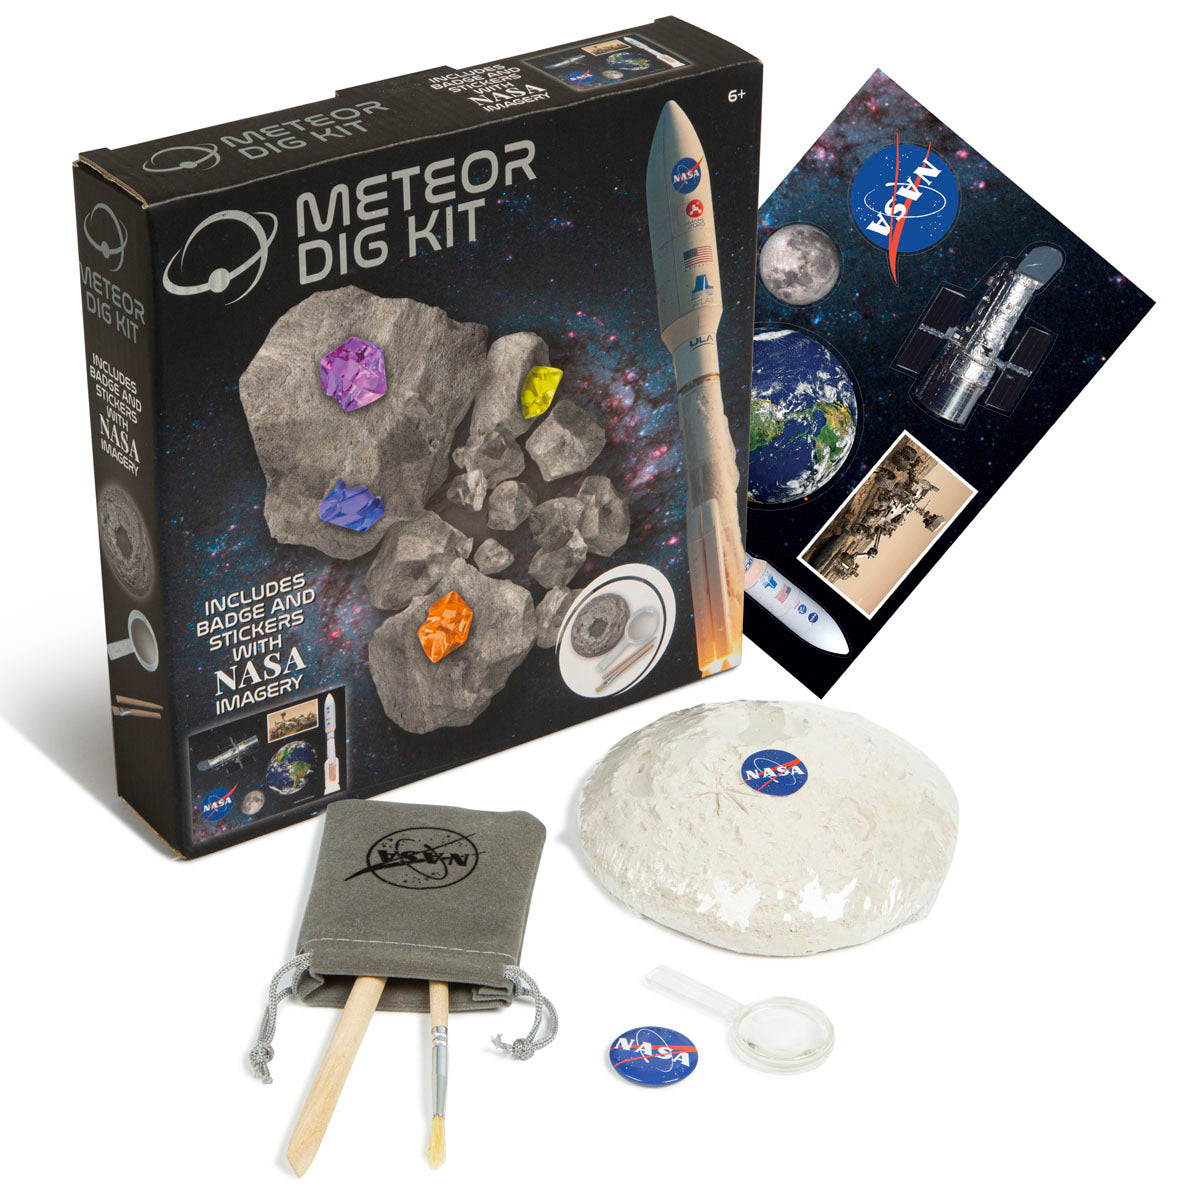 NASA Meteor Dig Kit